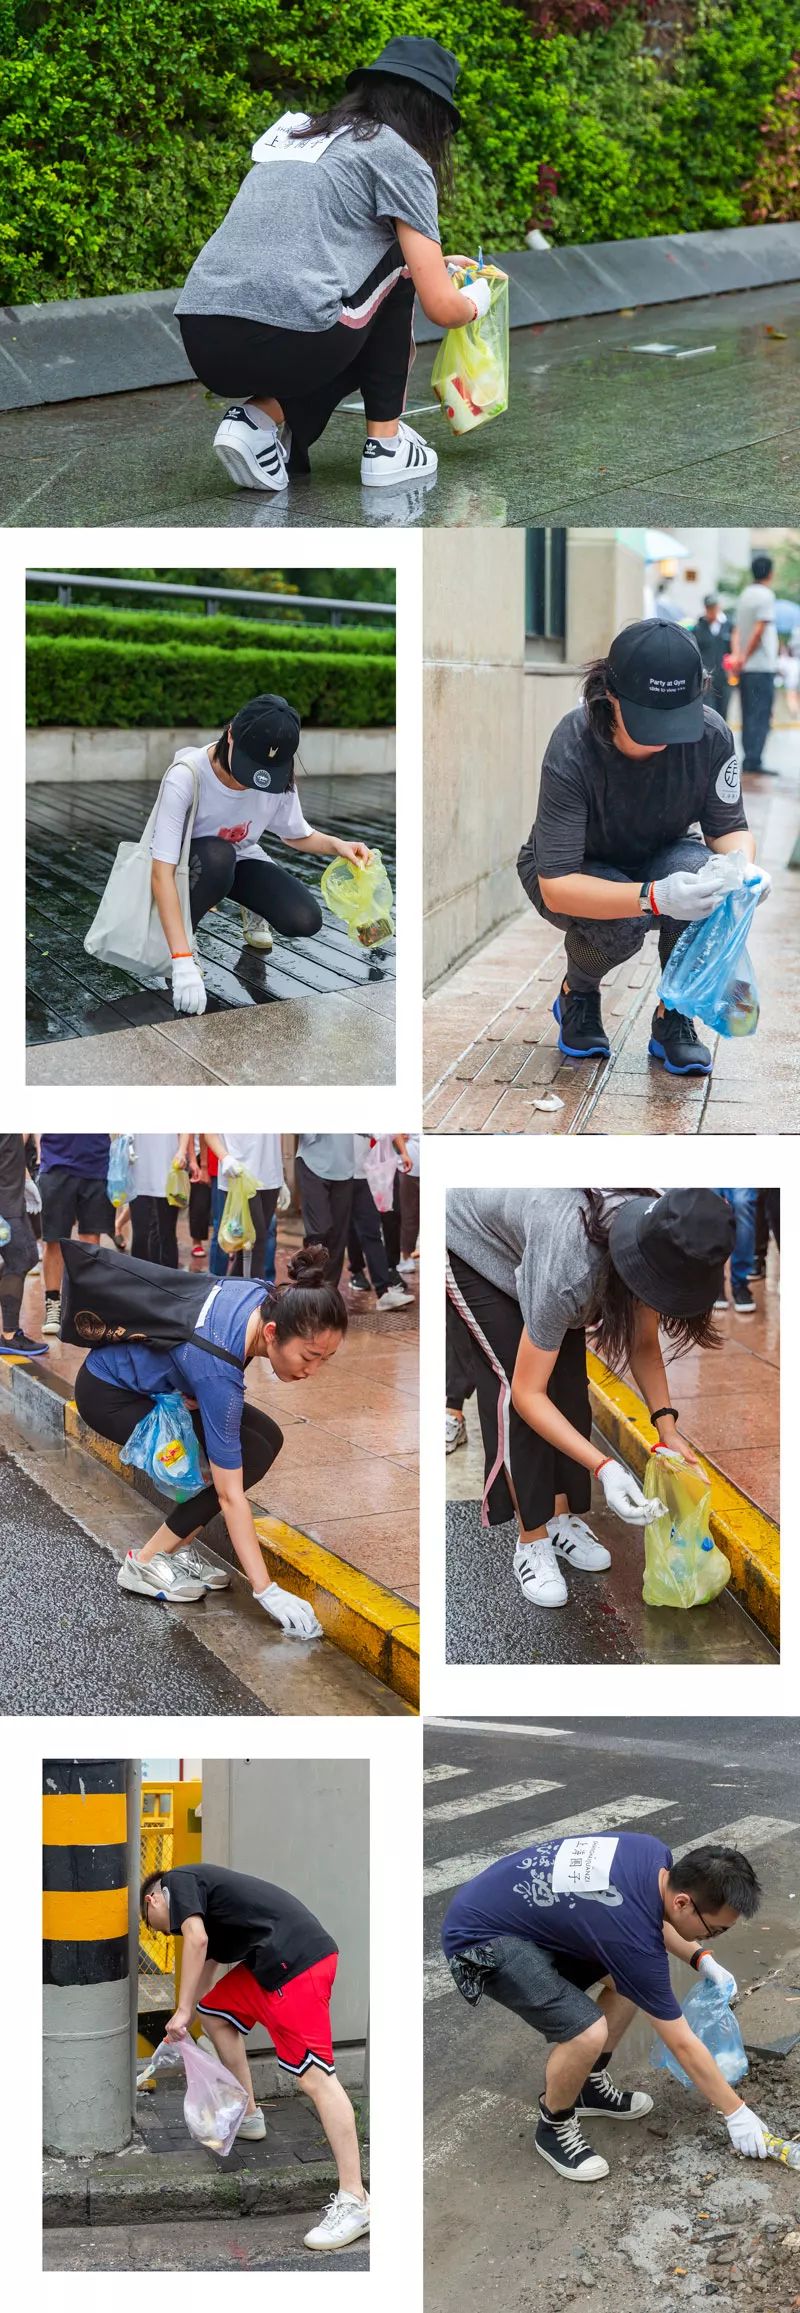 今天有一群人在上海街头边跑步边捡垃圾,真相是